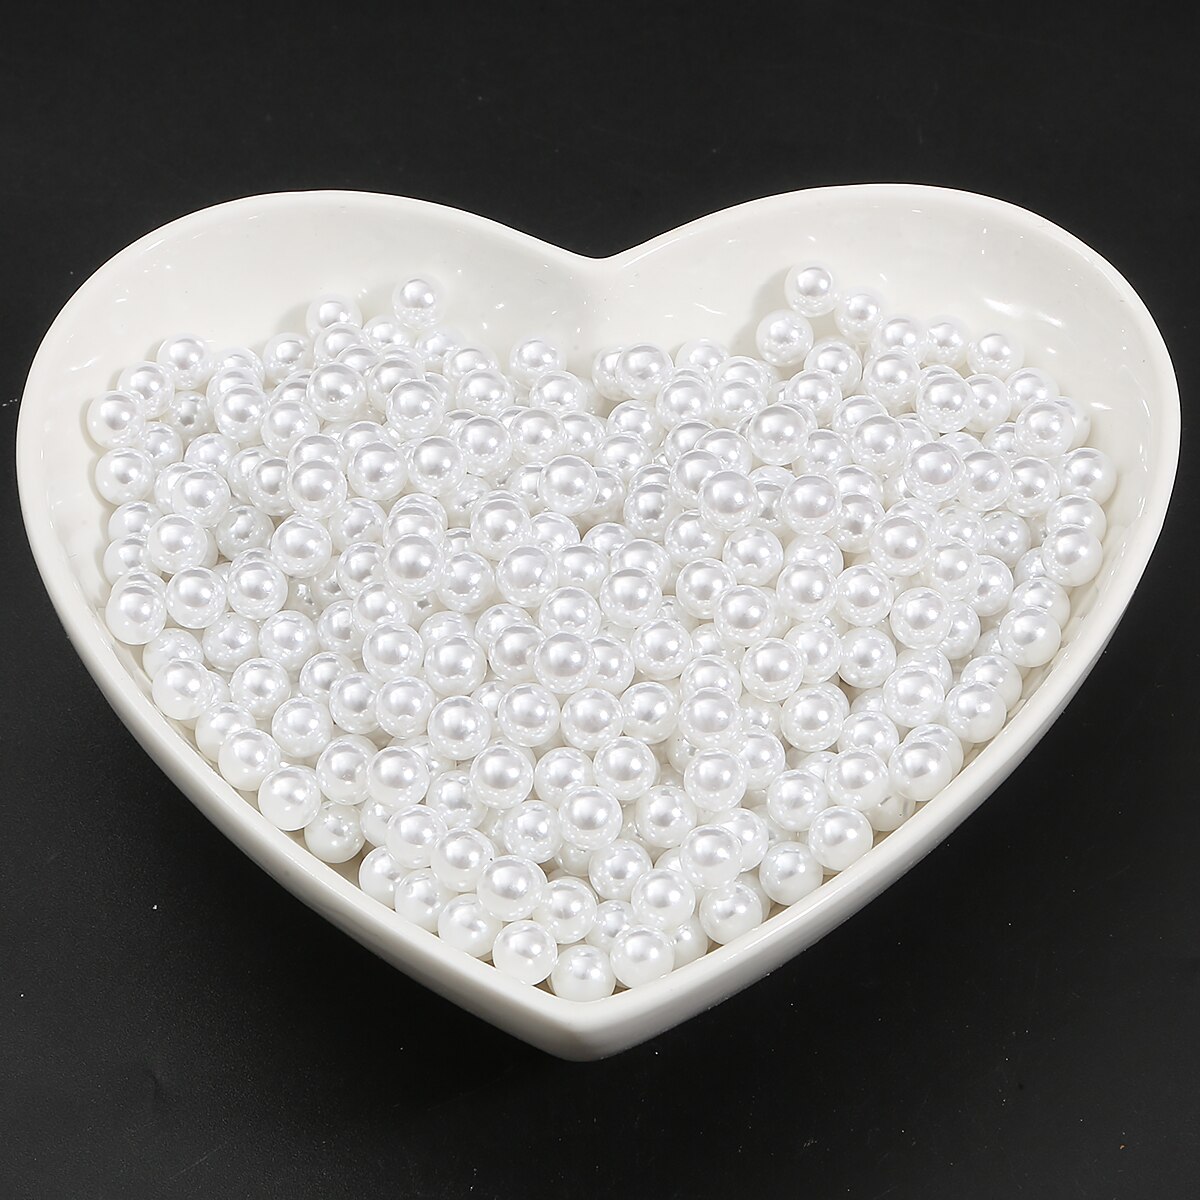 300 stk runde 5mm hvide / elfenben farve uden hul akryl imitation perleperler løse perler til smykker gør diy håndværk dekoration: Hvid